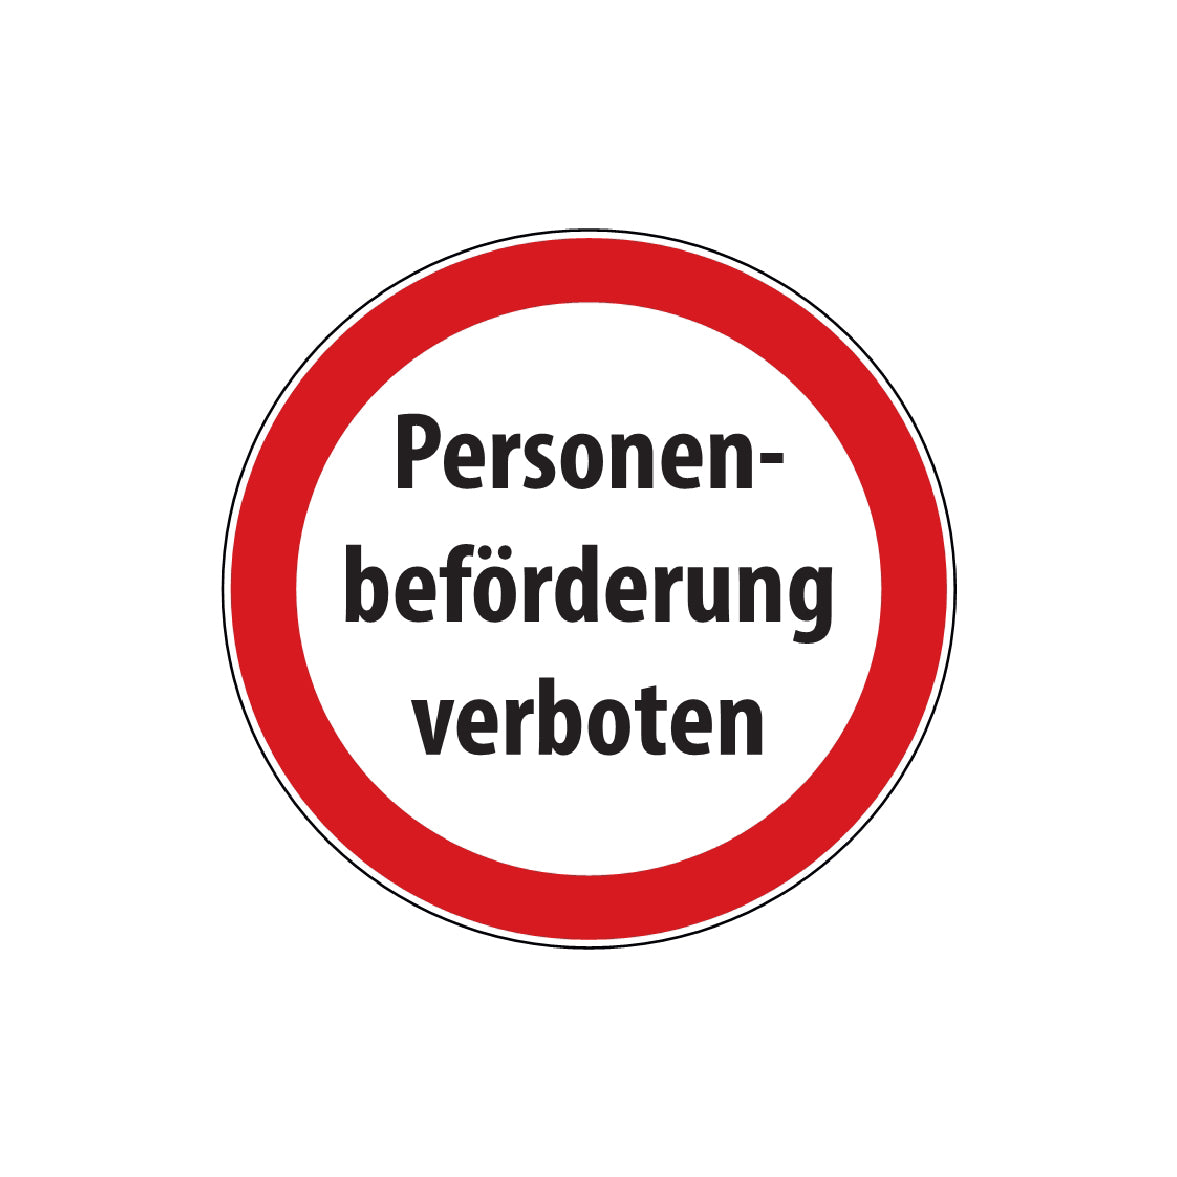 Personenbeförderung verboten Schild